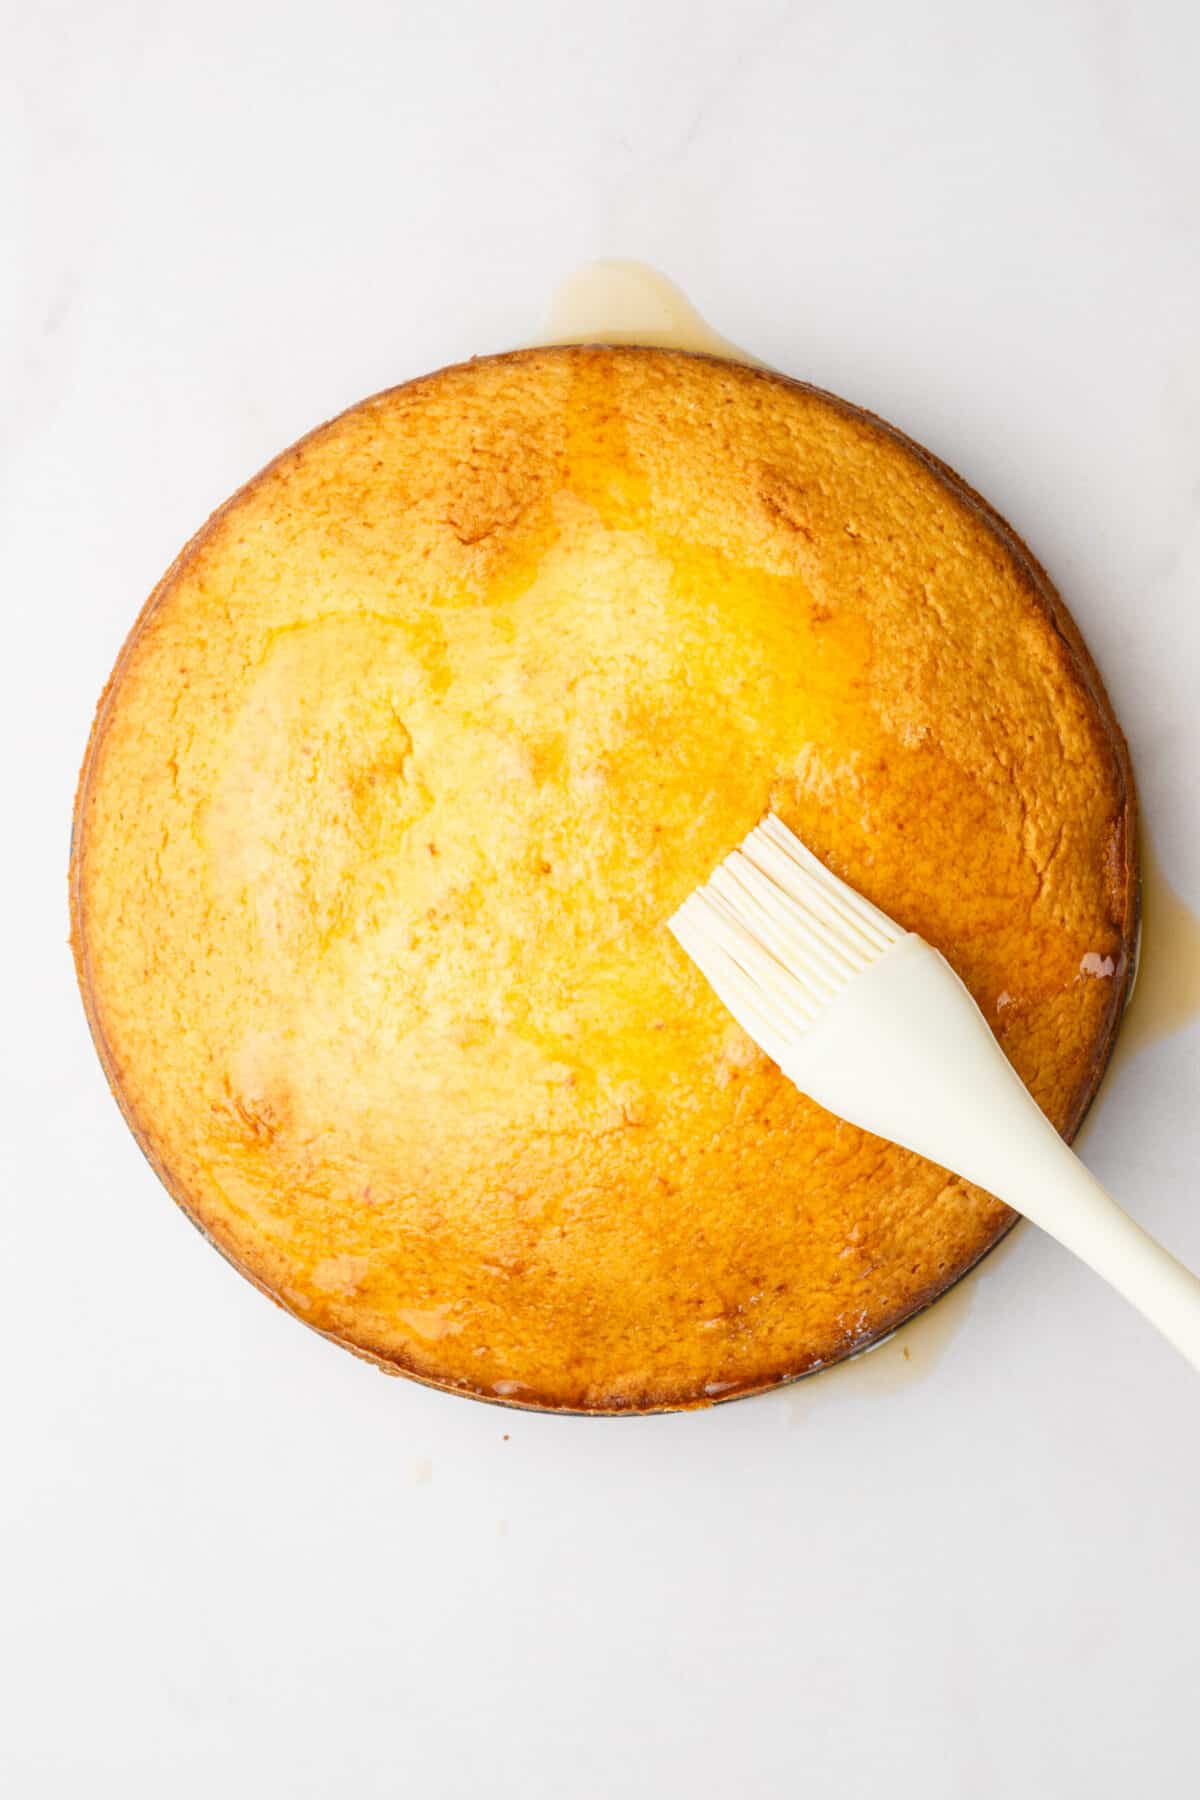 step 6 to make orange cake, use a kitchen brush to drench the orange glaze over the baked orange cake.